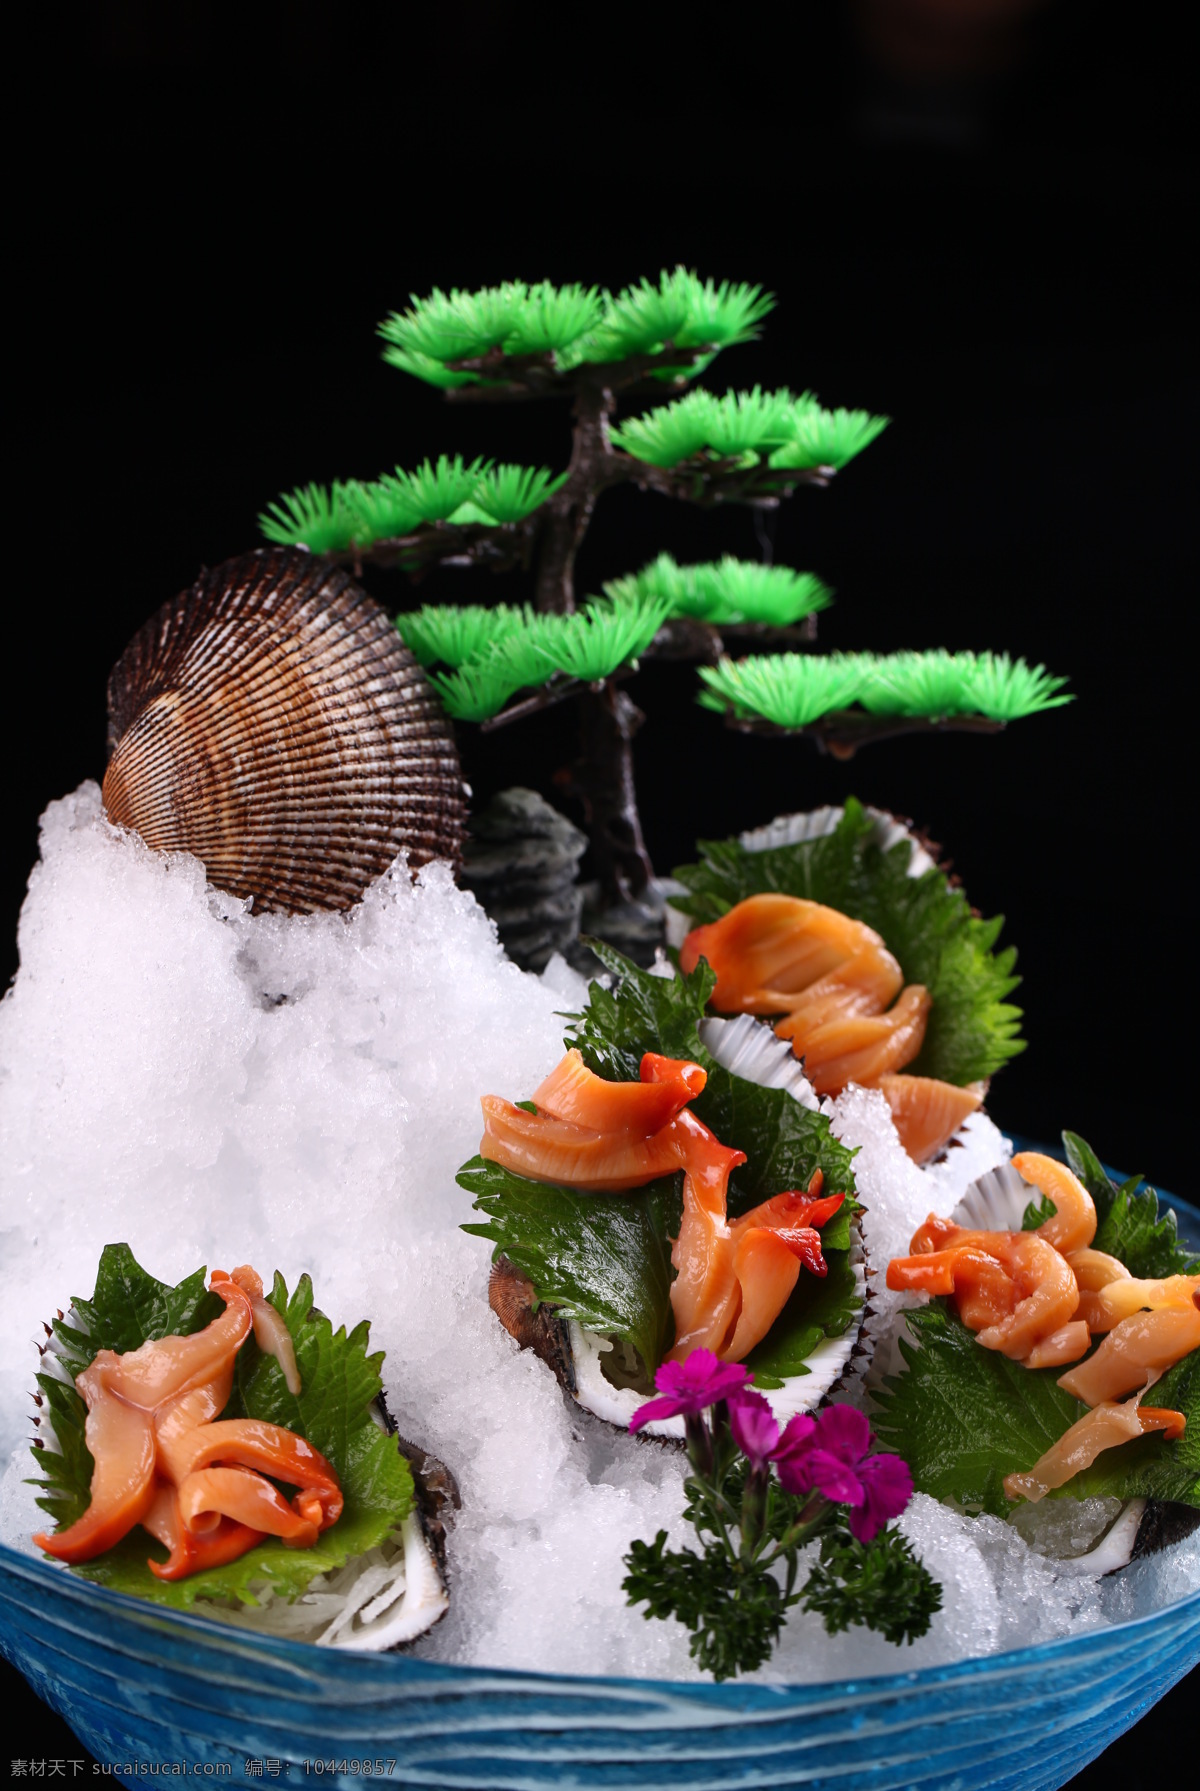 大赤贝 赤贝 贝类 赤贝刺身 涮赤贝 传统美食 餐饮美食